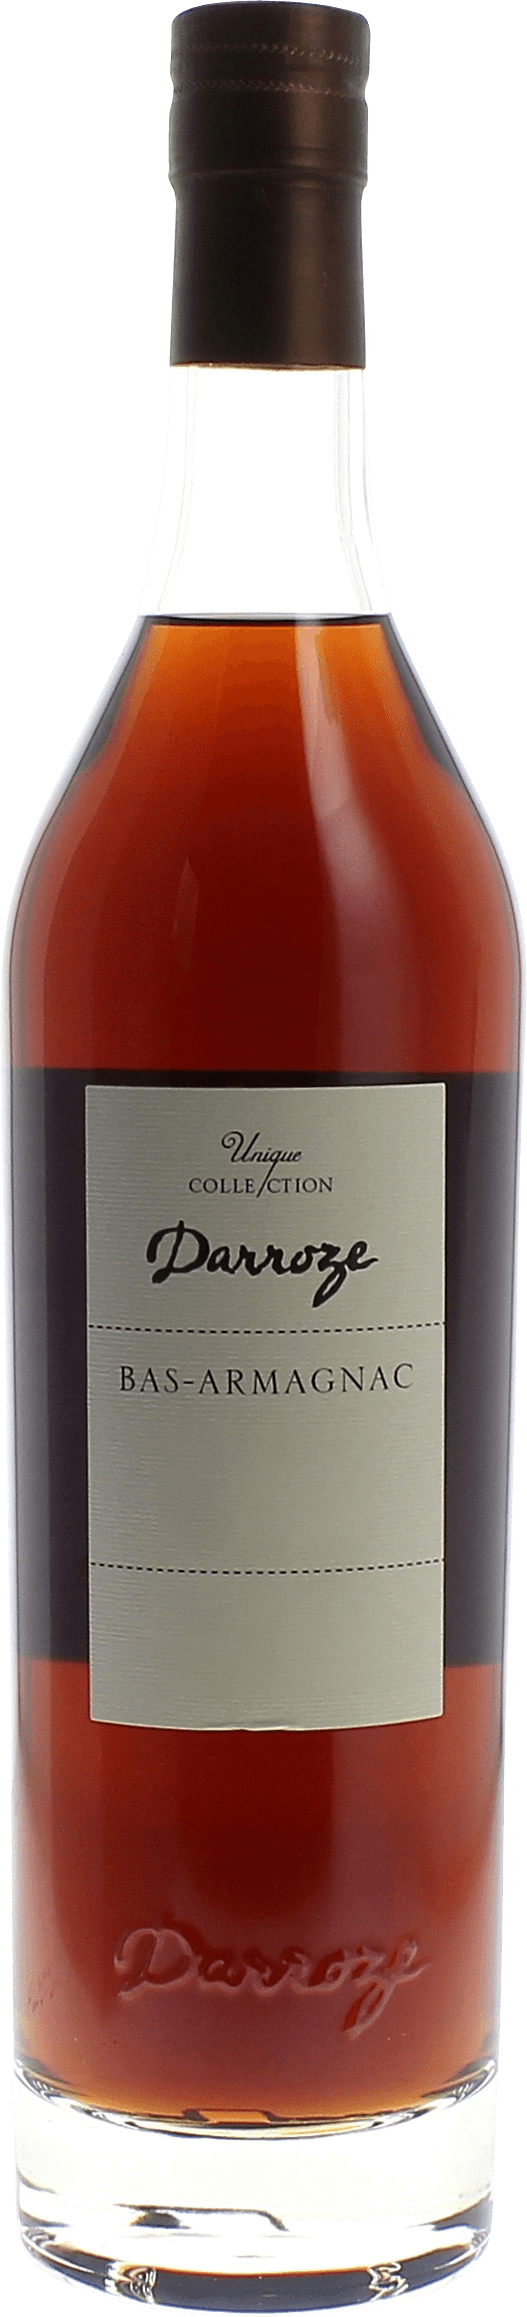 Domaine de pere 50 1992  Bas Armagnac, DARROZE  Francis Bas Armagnac